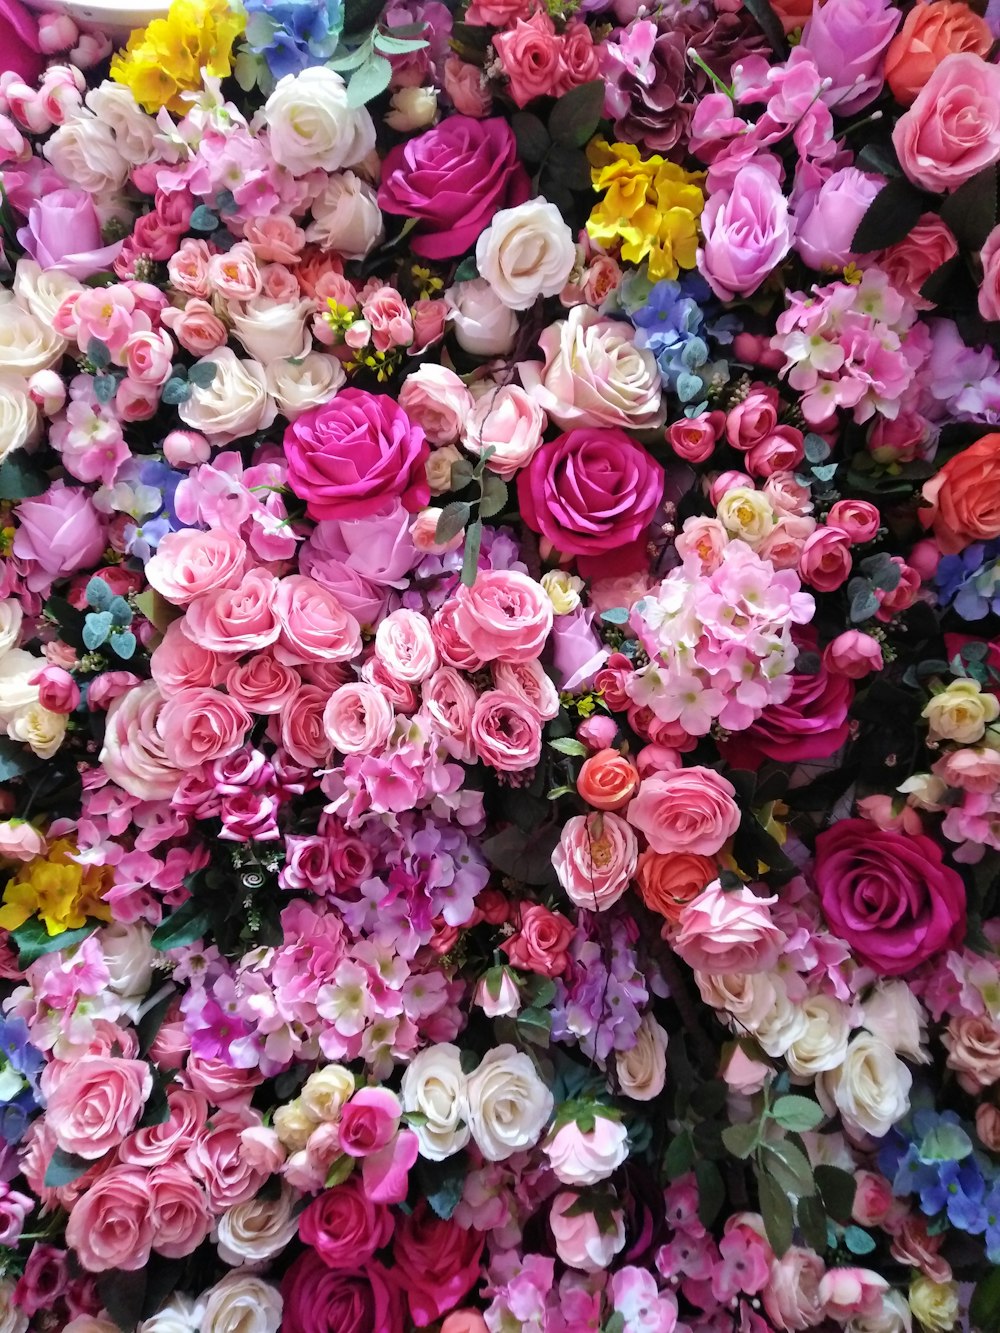 1K+ Floral Design Pictures | Download Free Images on Unsplash